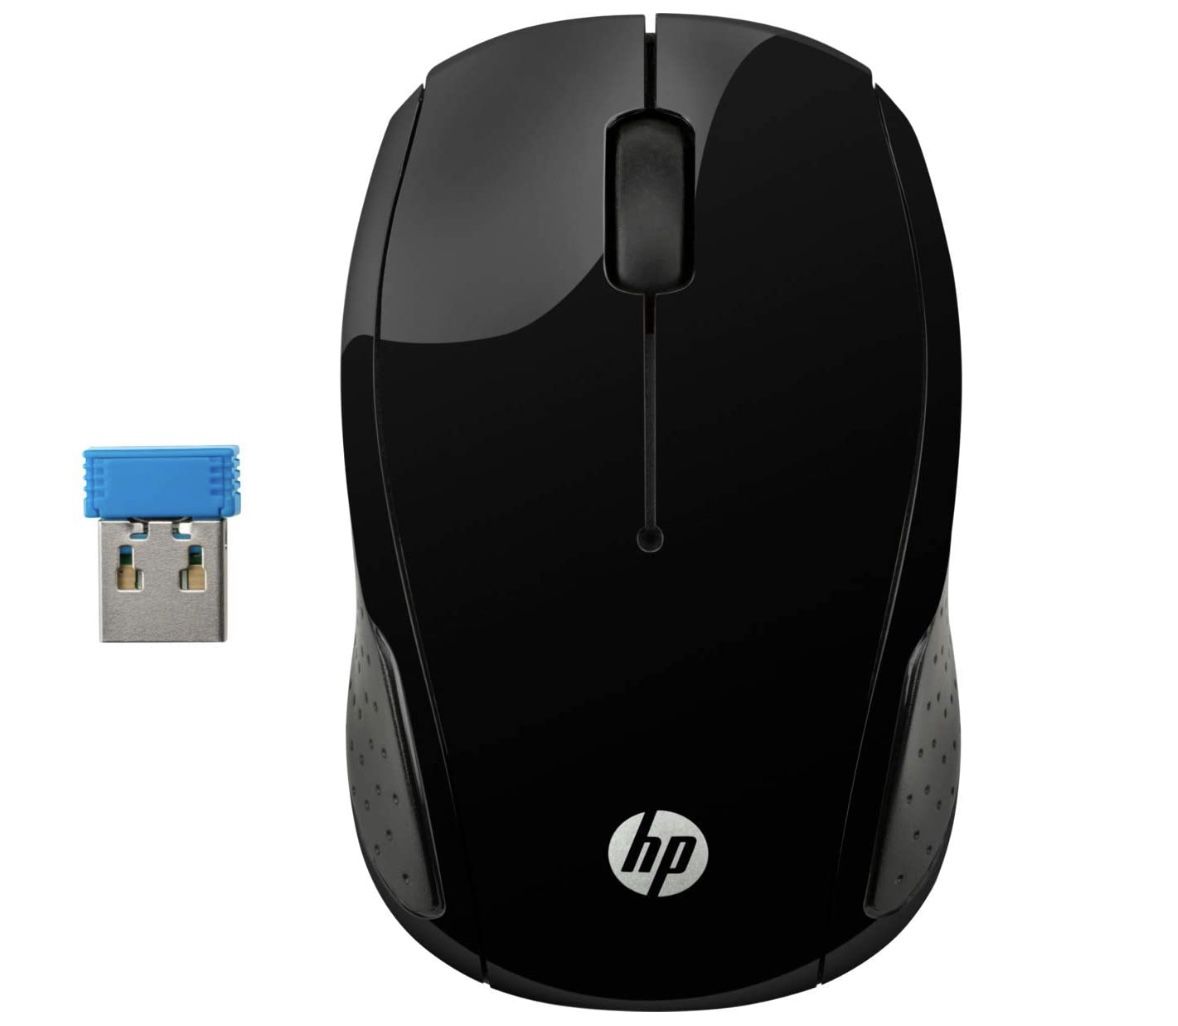 HP 200 (X6W31AA) kabellose Maus mit 3 Tasten und Scrollrad in Schwarz für 5,19€ (statt 16€)   Prime